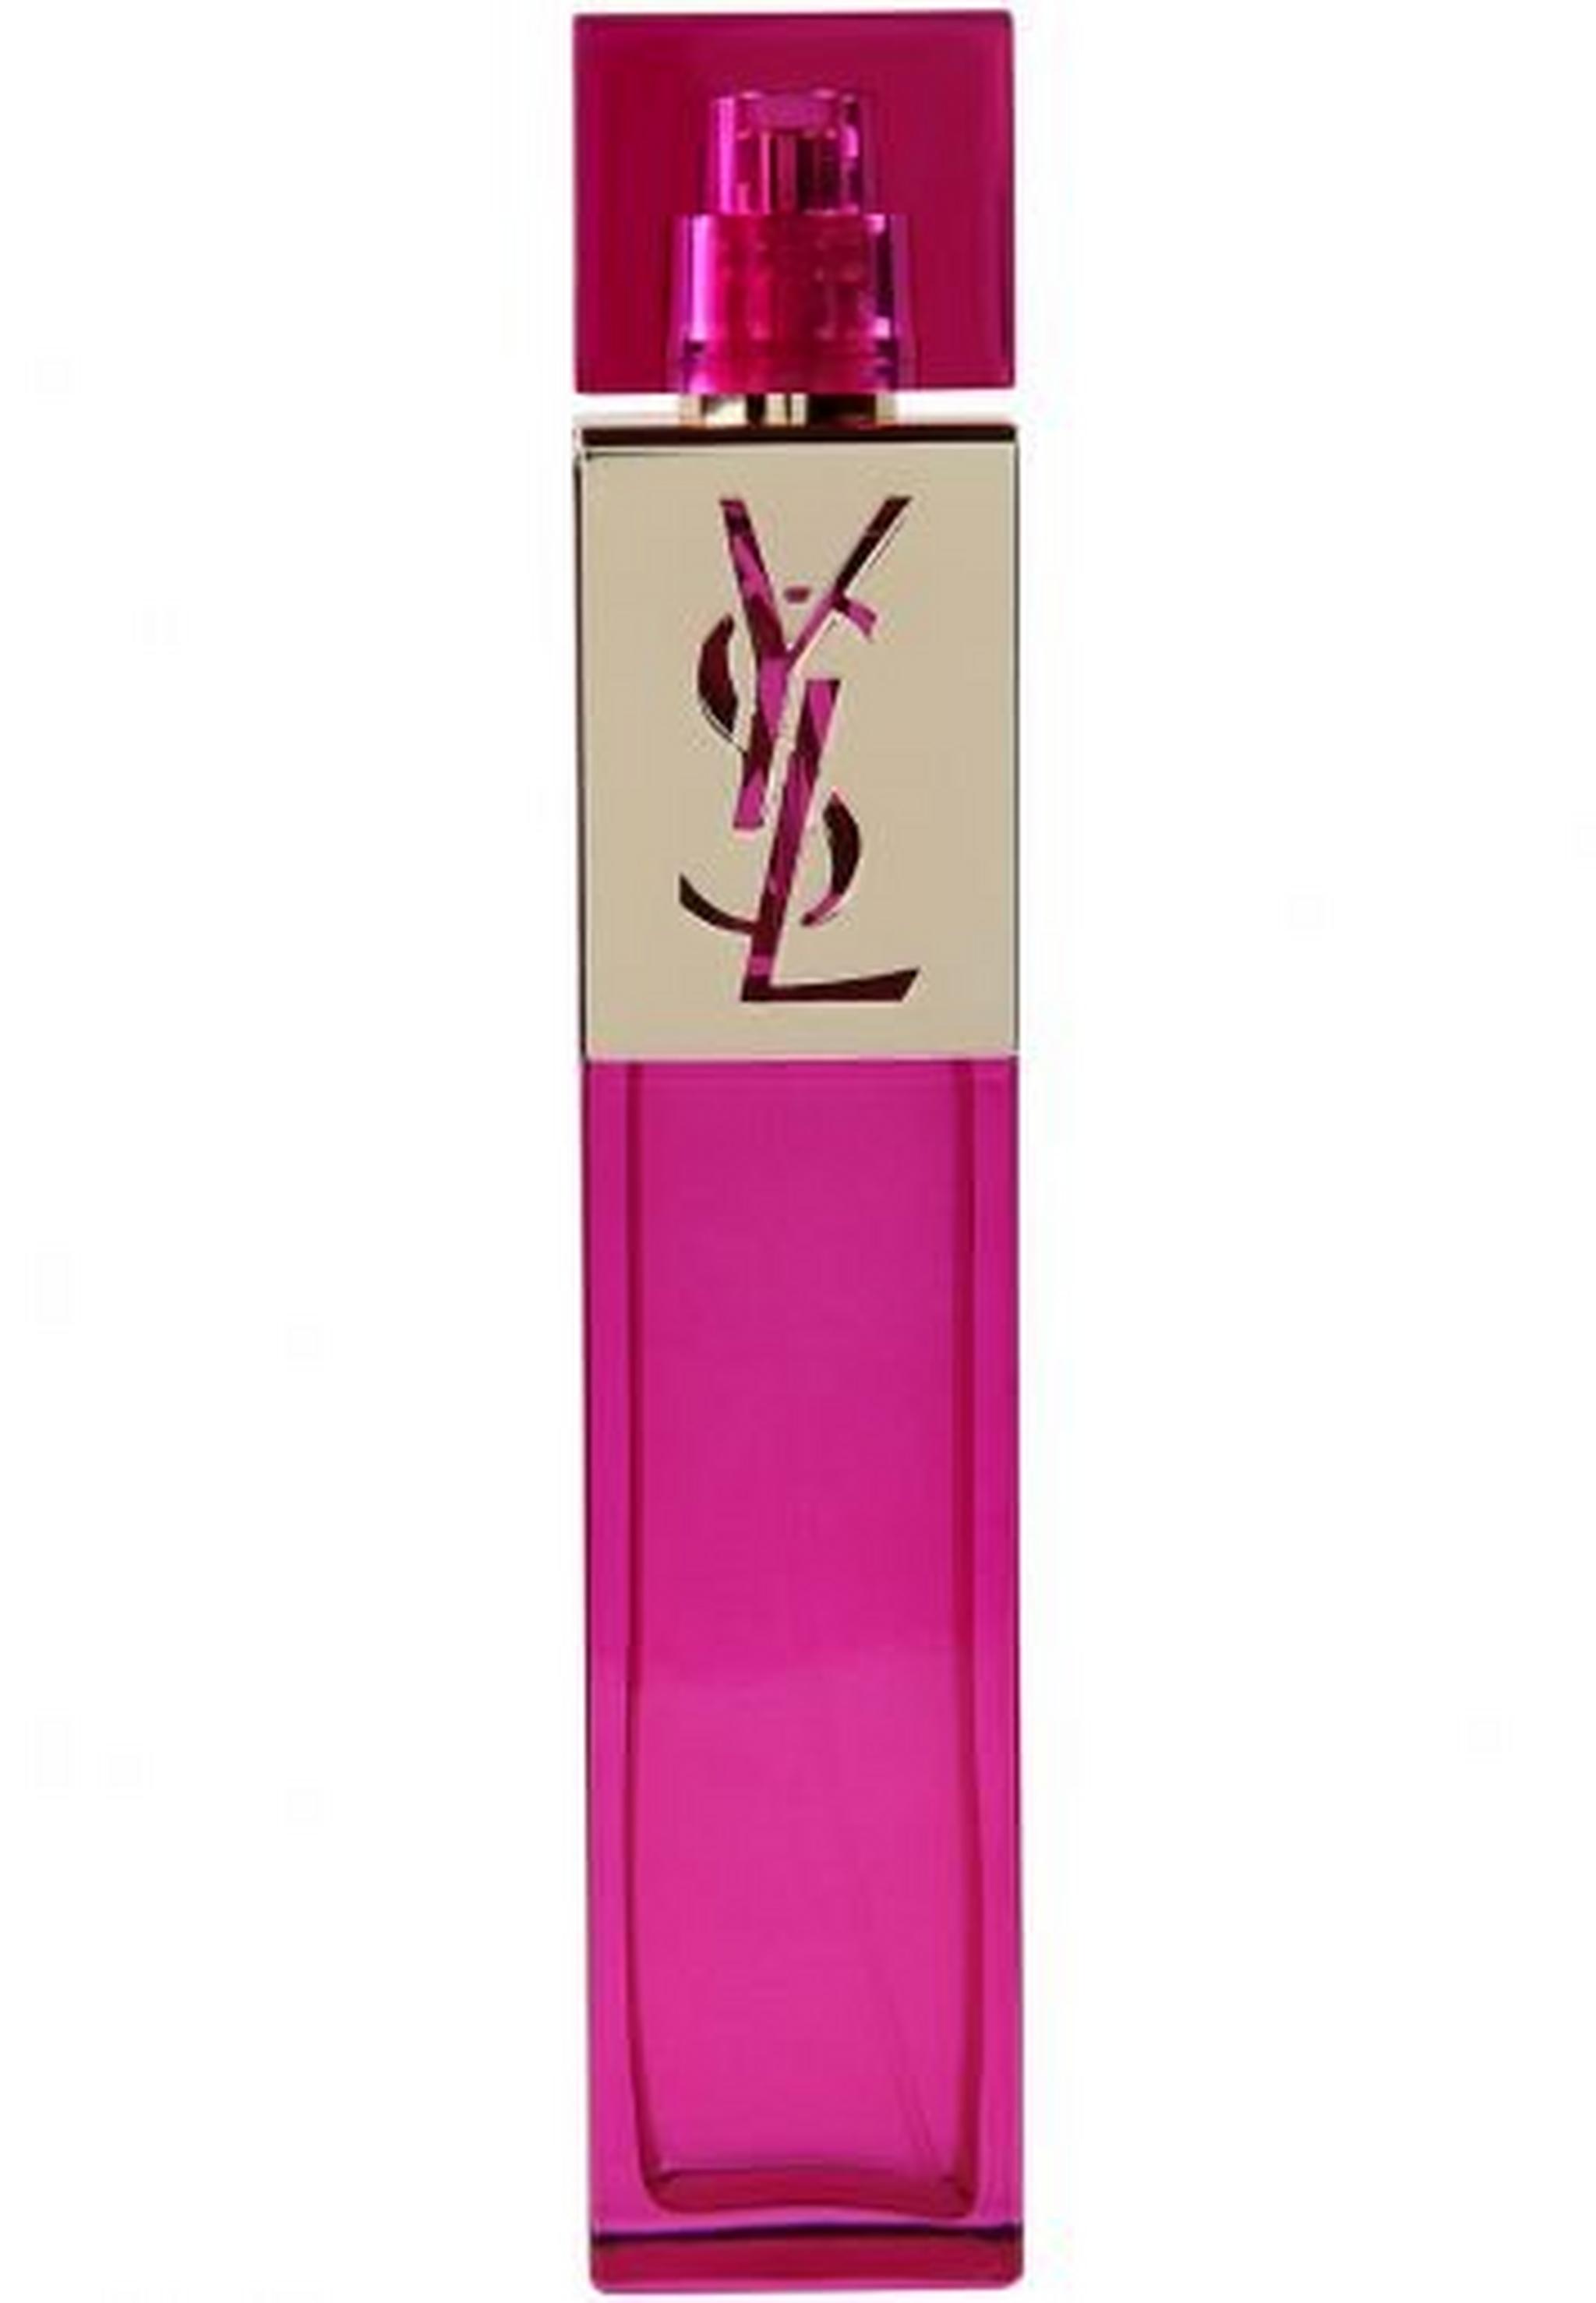 YSL Elle by Yves Saint Laurent for Women 90 mL Eau de Parfum